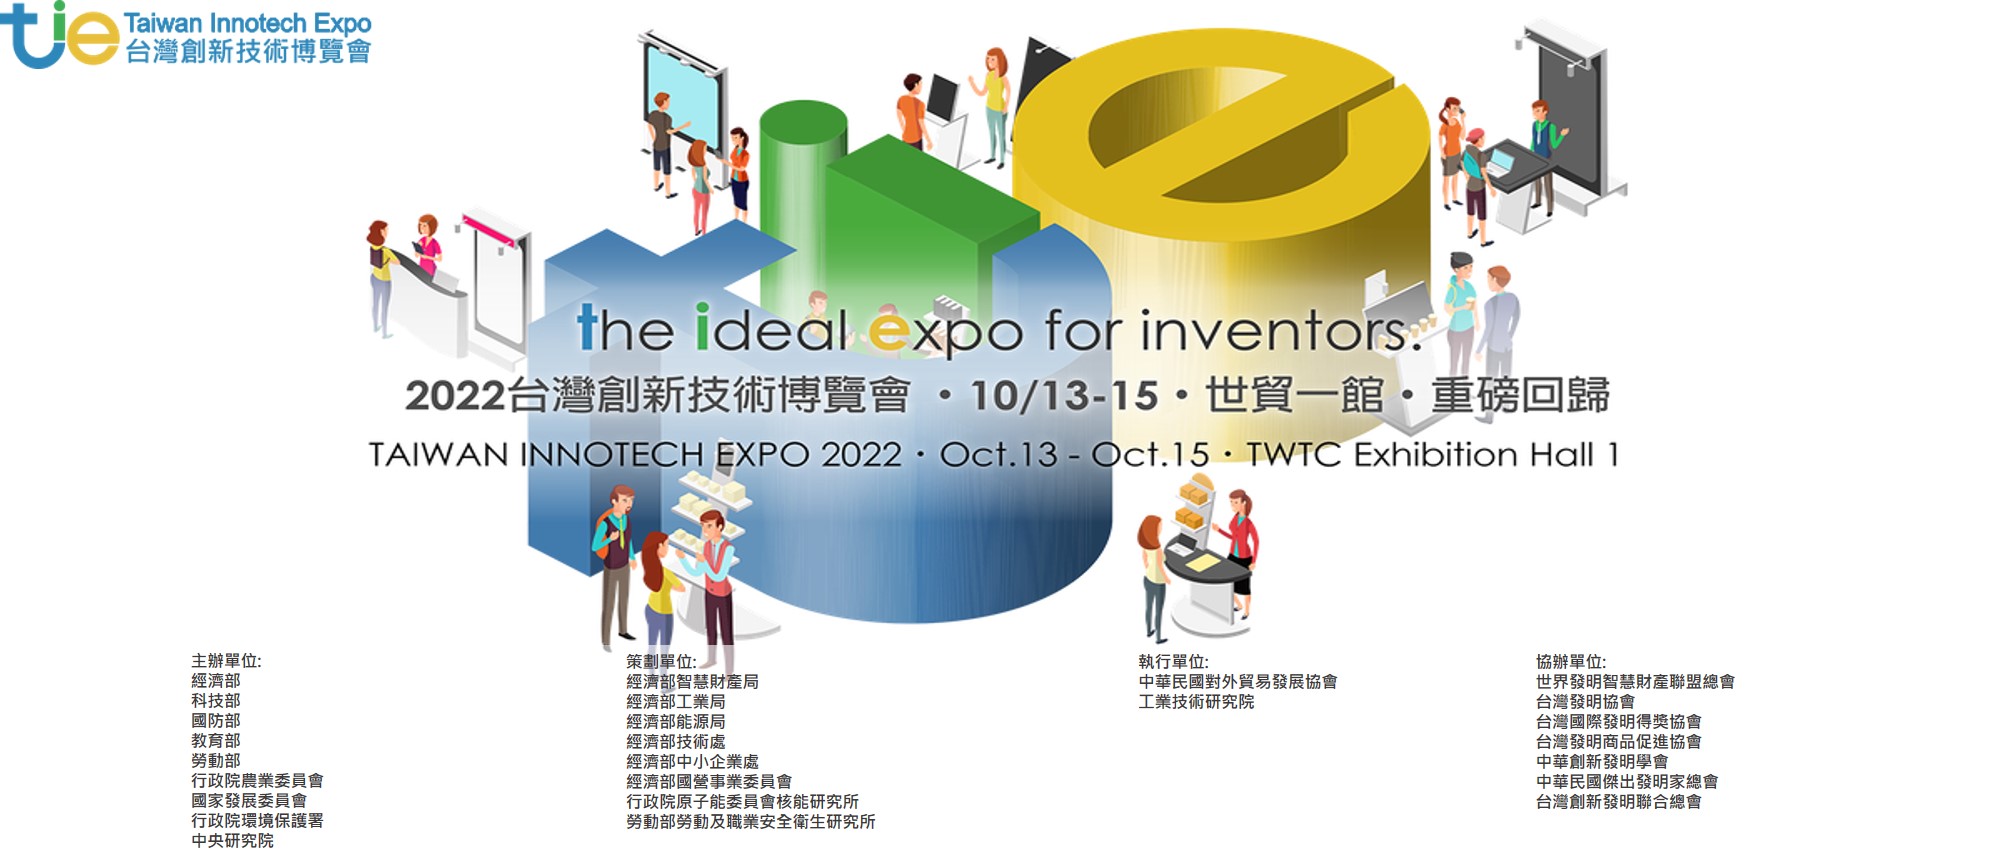 【徵展公告】2022台灣創新技術博覽會「發明競賽」徵展公告